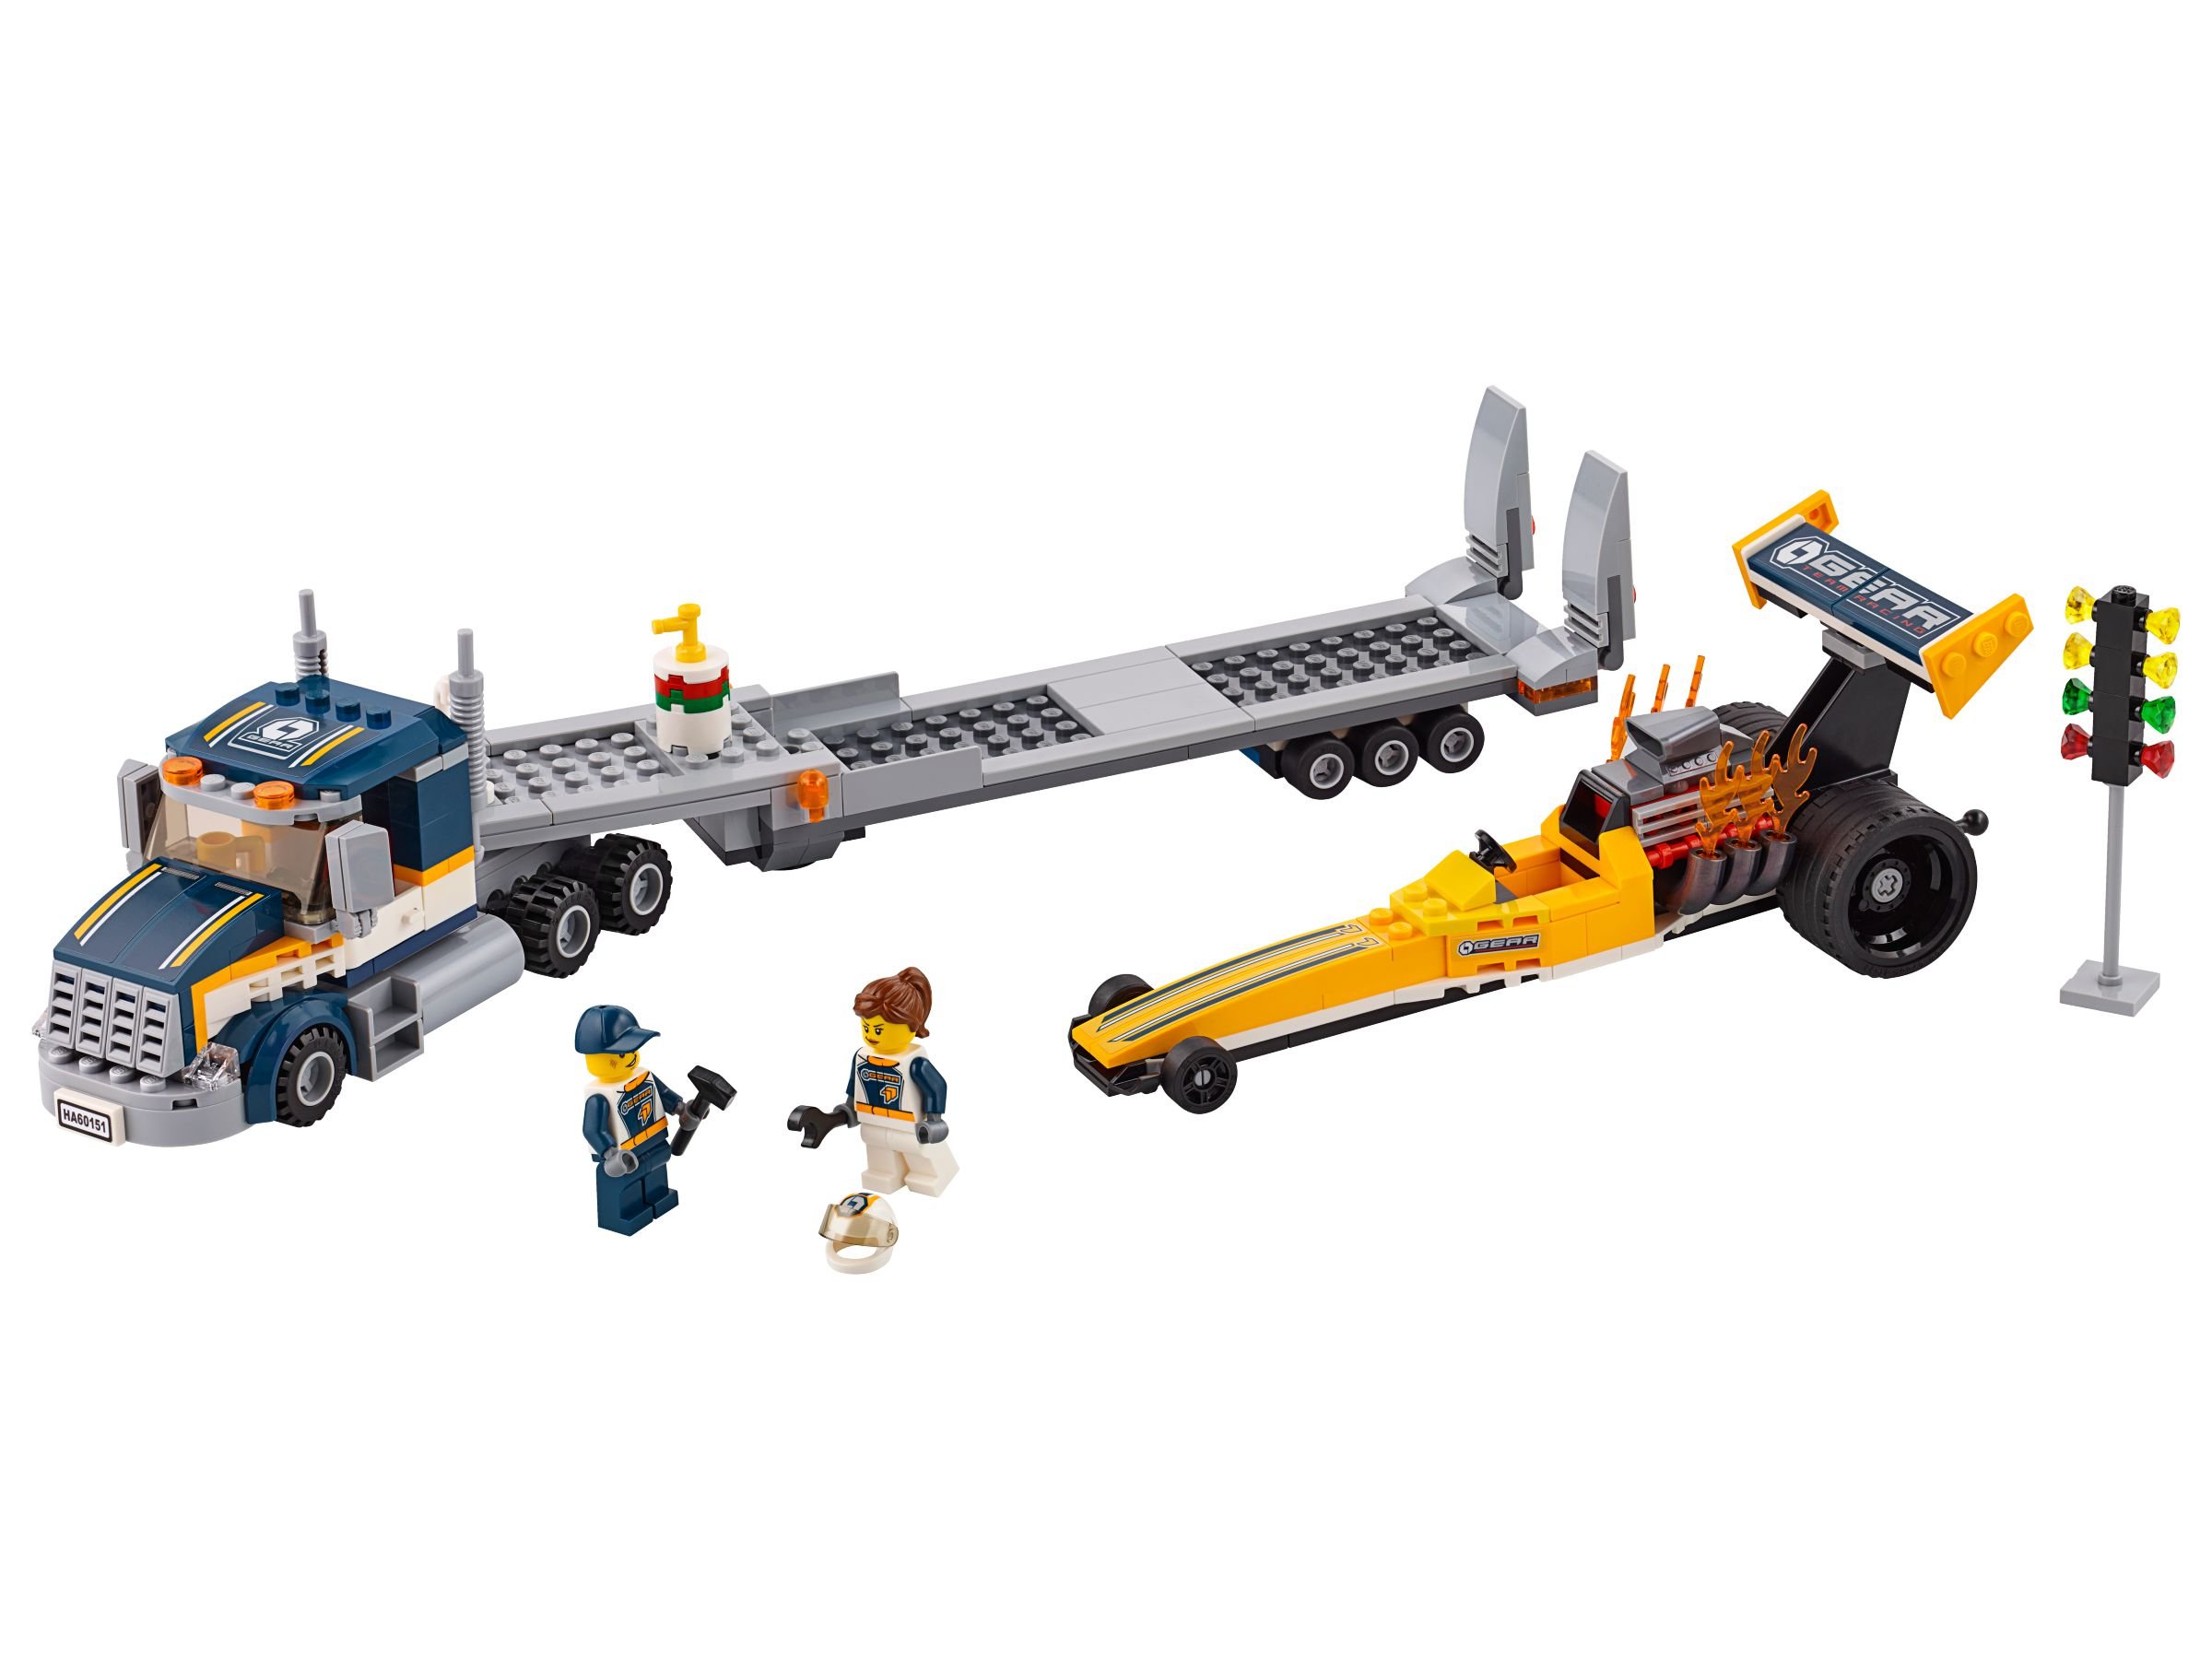 LEGO City 60151 Dragster-Transporter LEGO_60151.jpg